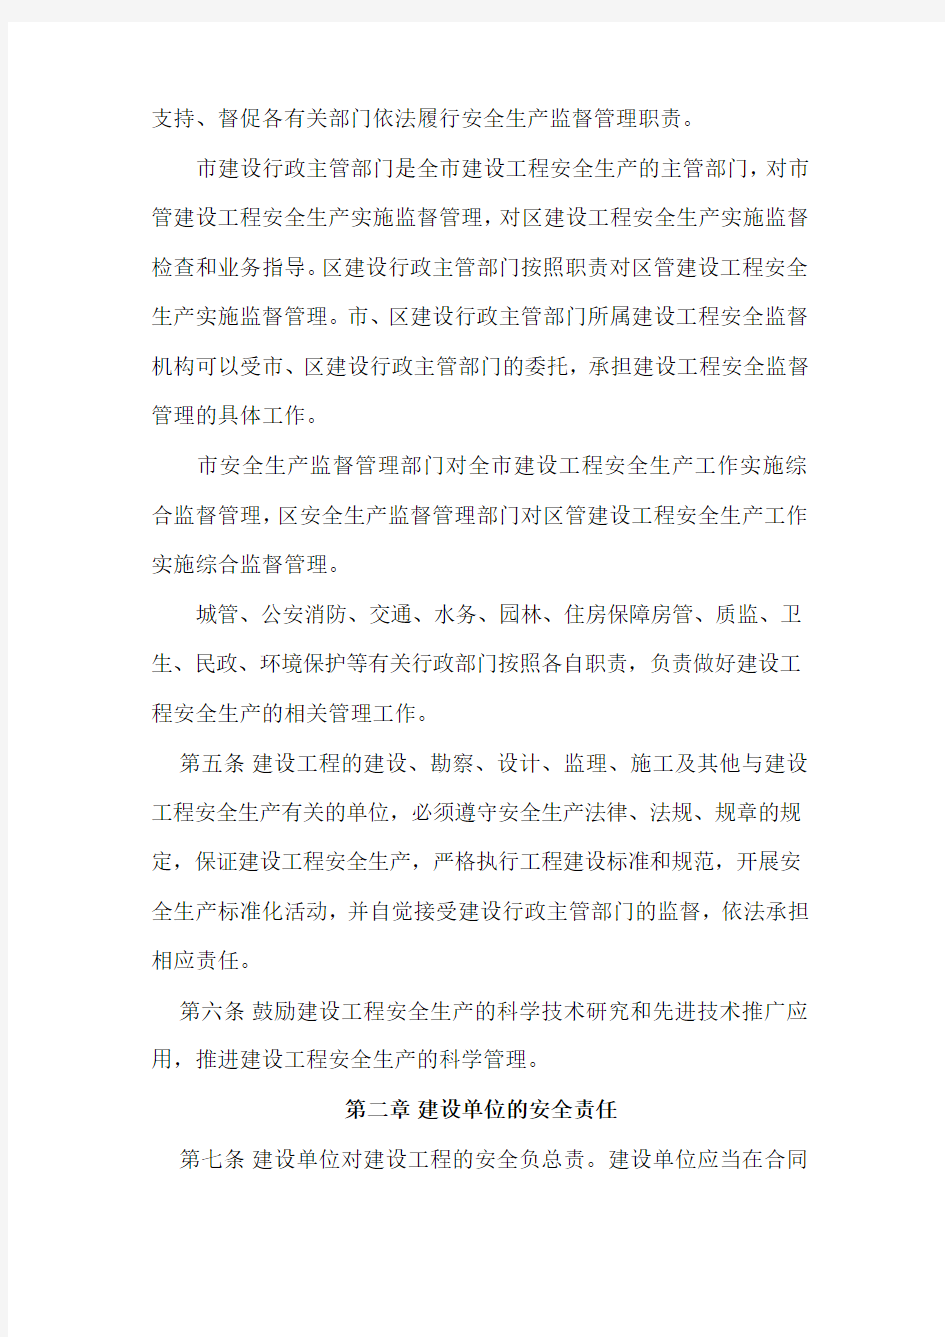 武汉市建设工程安全生产管理办法(市政229号令)